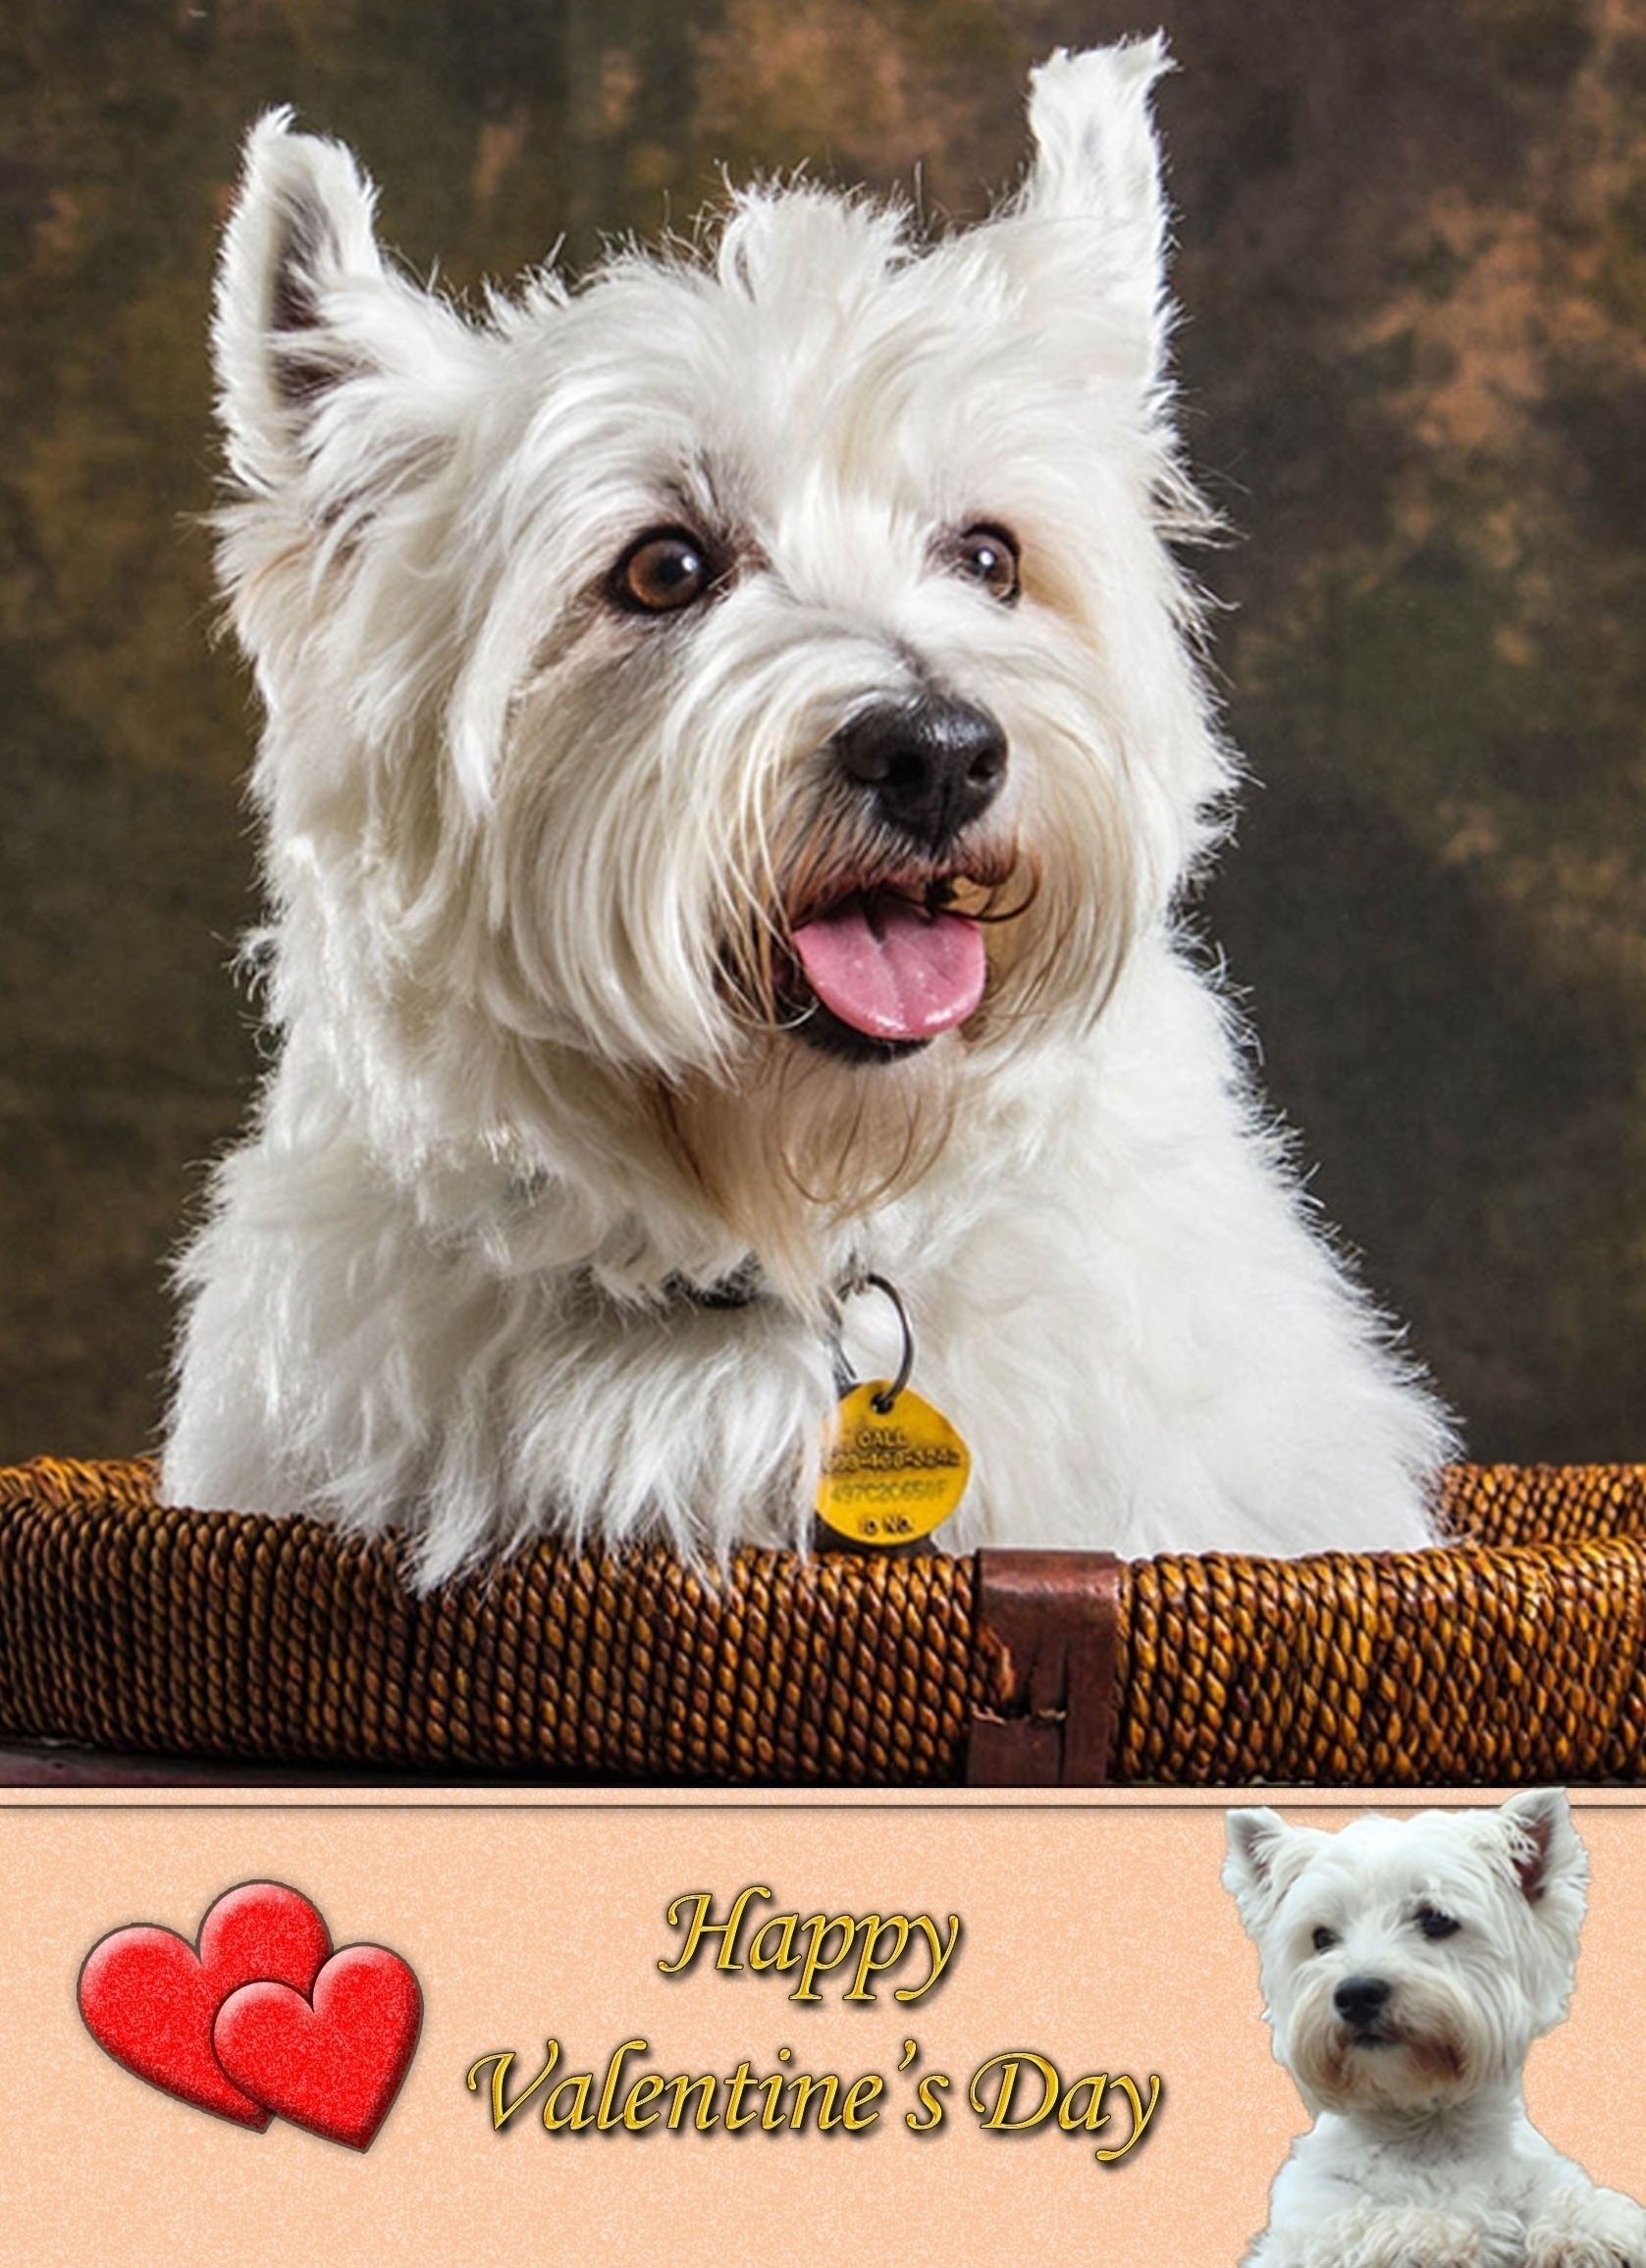 West Highland Terrier Valentine's Day Card